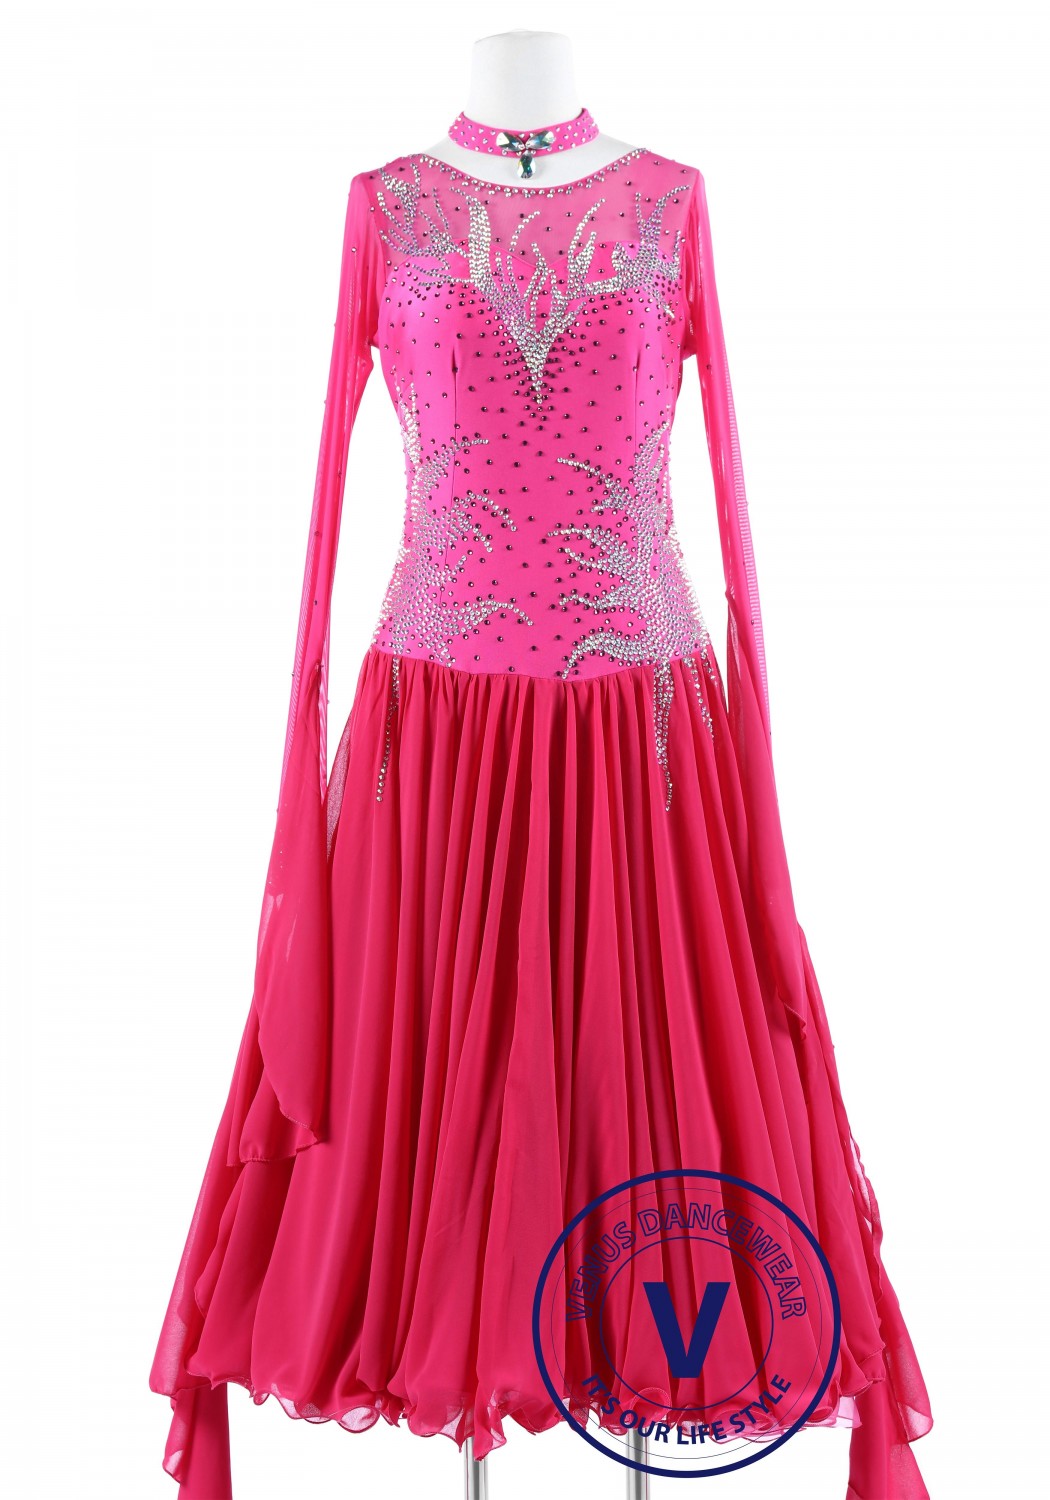 Pink Ice Standard Smooth Foxtrot Quickstep Dress Waltz